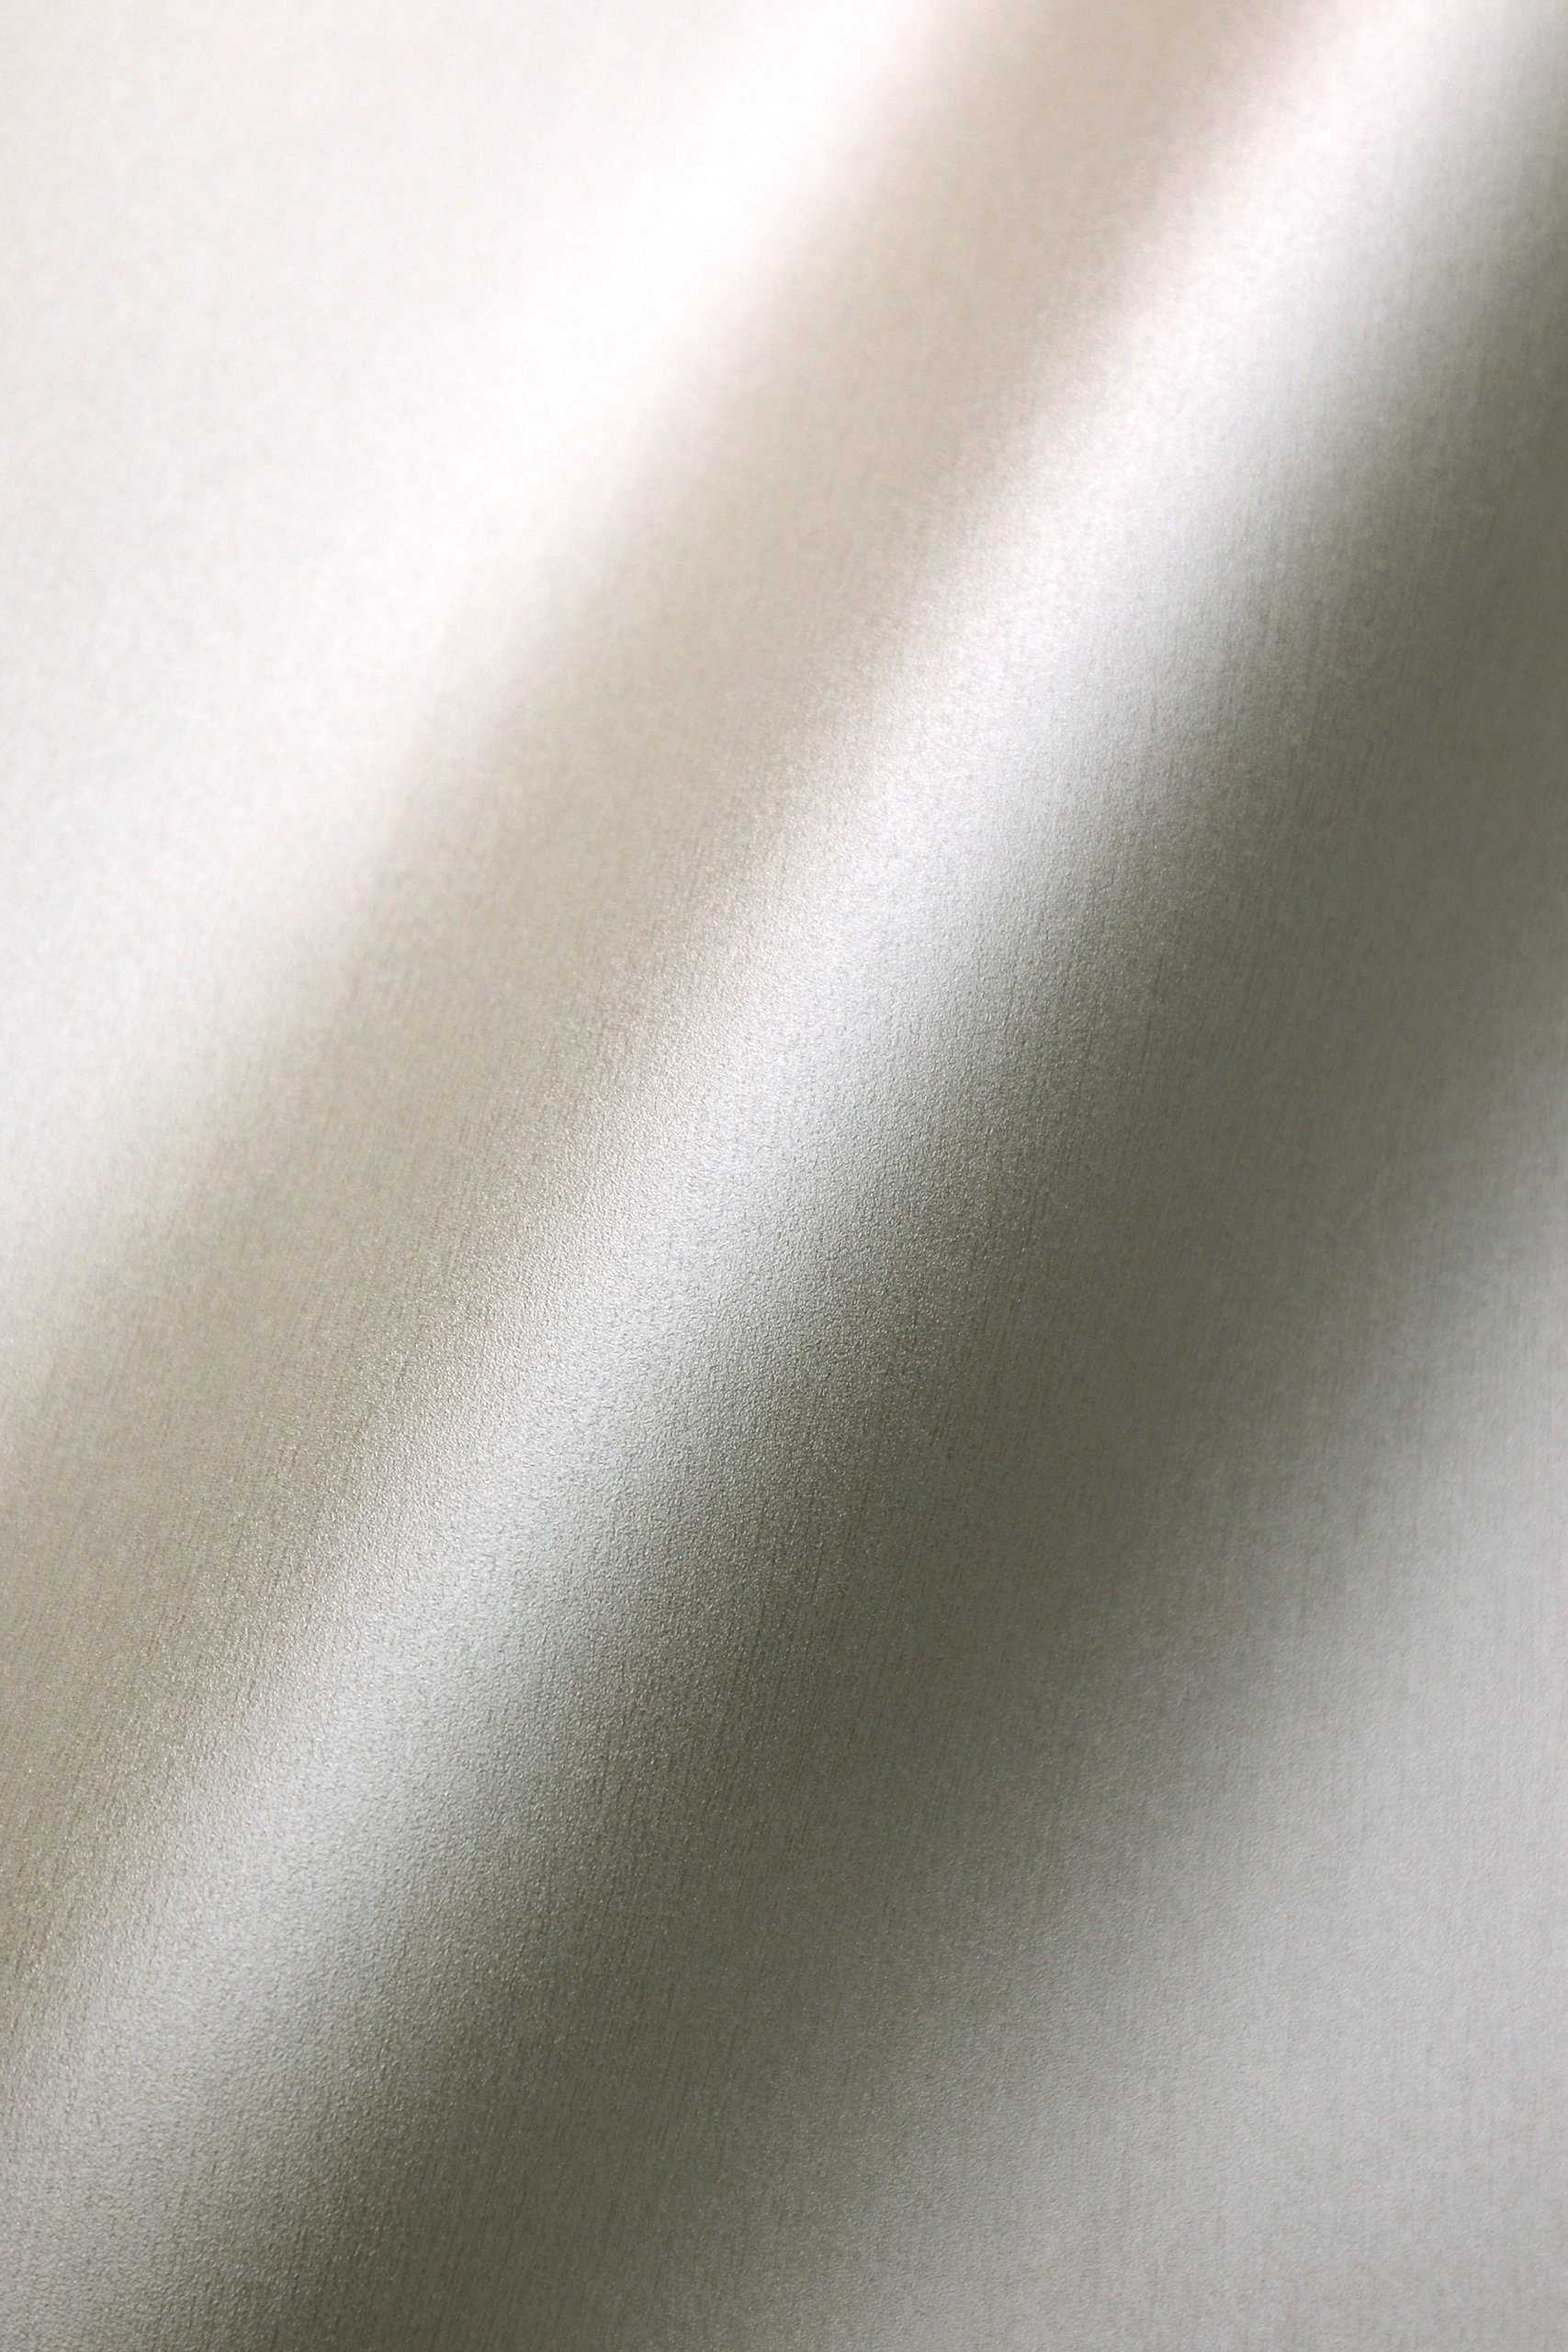 Newroom Vliestapete, Creme Tapete Modern Unifarbe - Universal Einfarbig Weiß Metallic Uni Glamour Struktur Monochrom für Wohnzimmer Schlafzimmer Küche